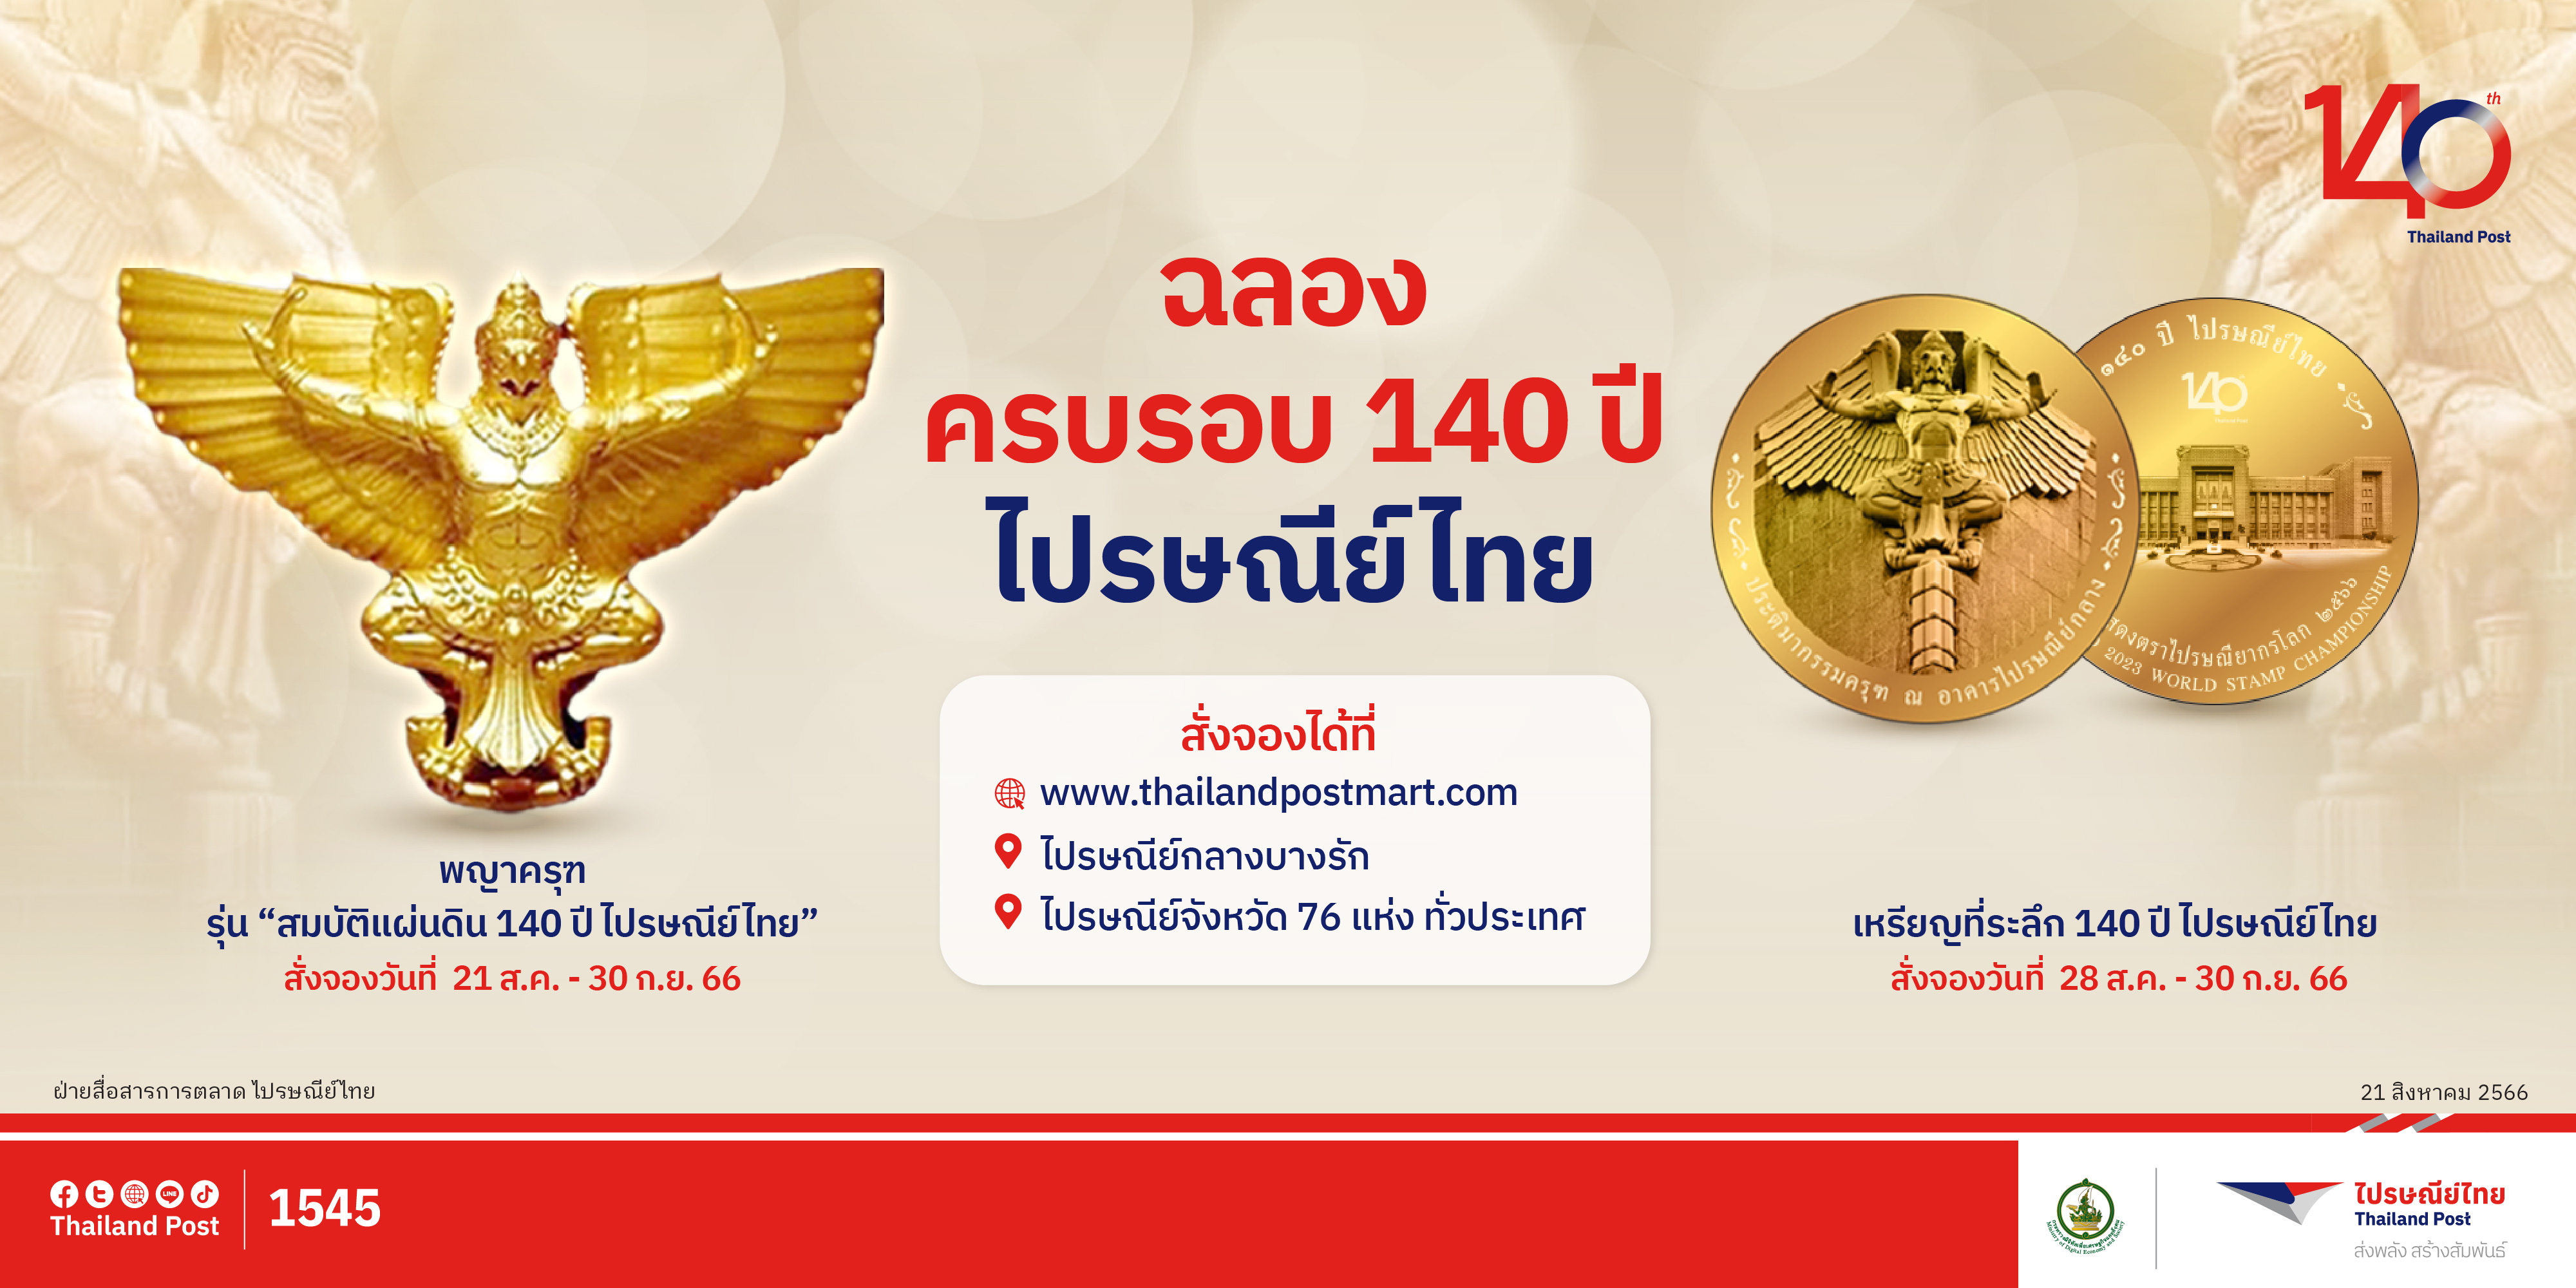 เปิดจองวัตถุมงคลพญาครุฑ รุ่น สมบัติแผ่นดินฯ และเหรียญที่ระลึกฯ ที่ ThailandPostMart และไปรษณีย์จังหวัดทั่วประเทศ